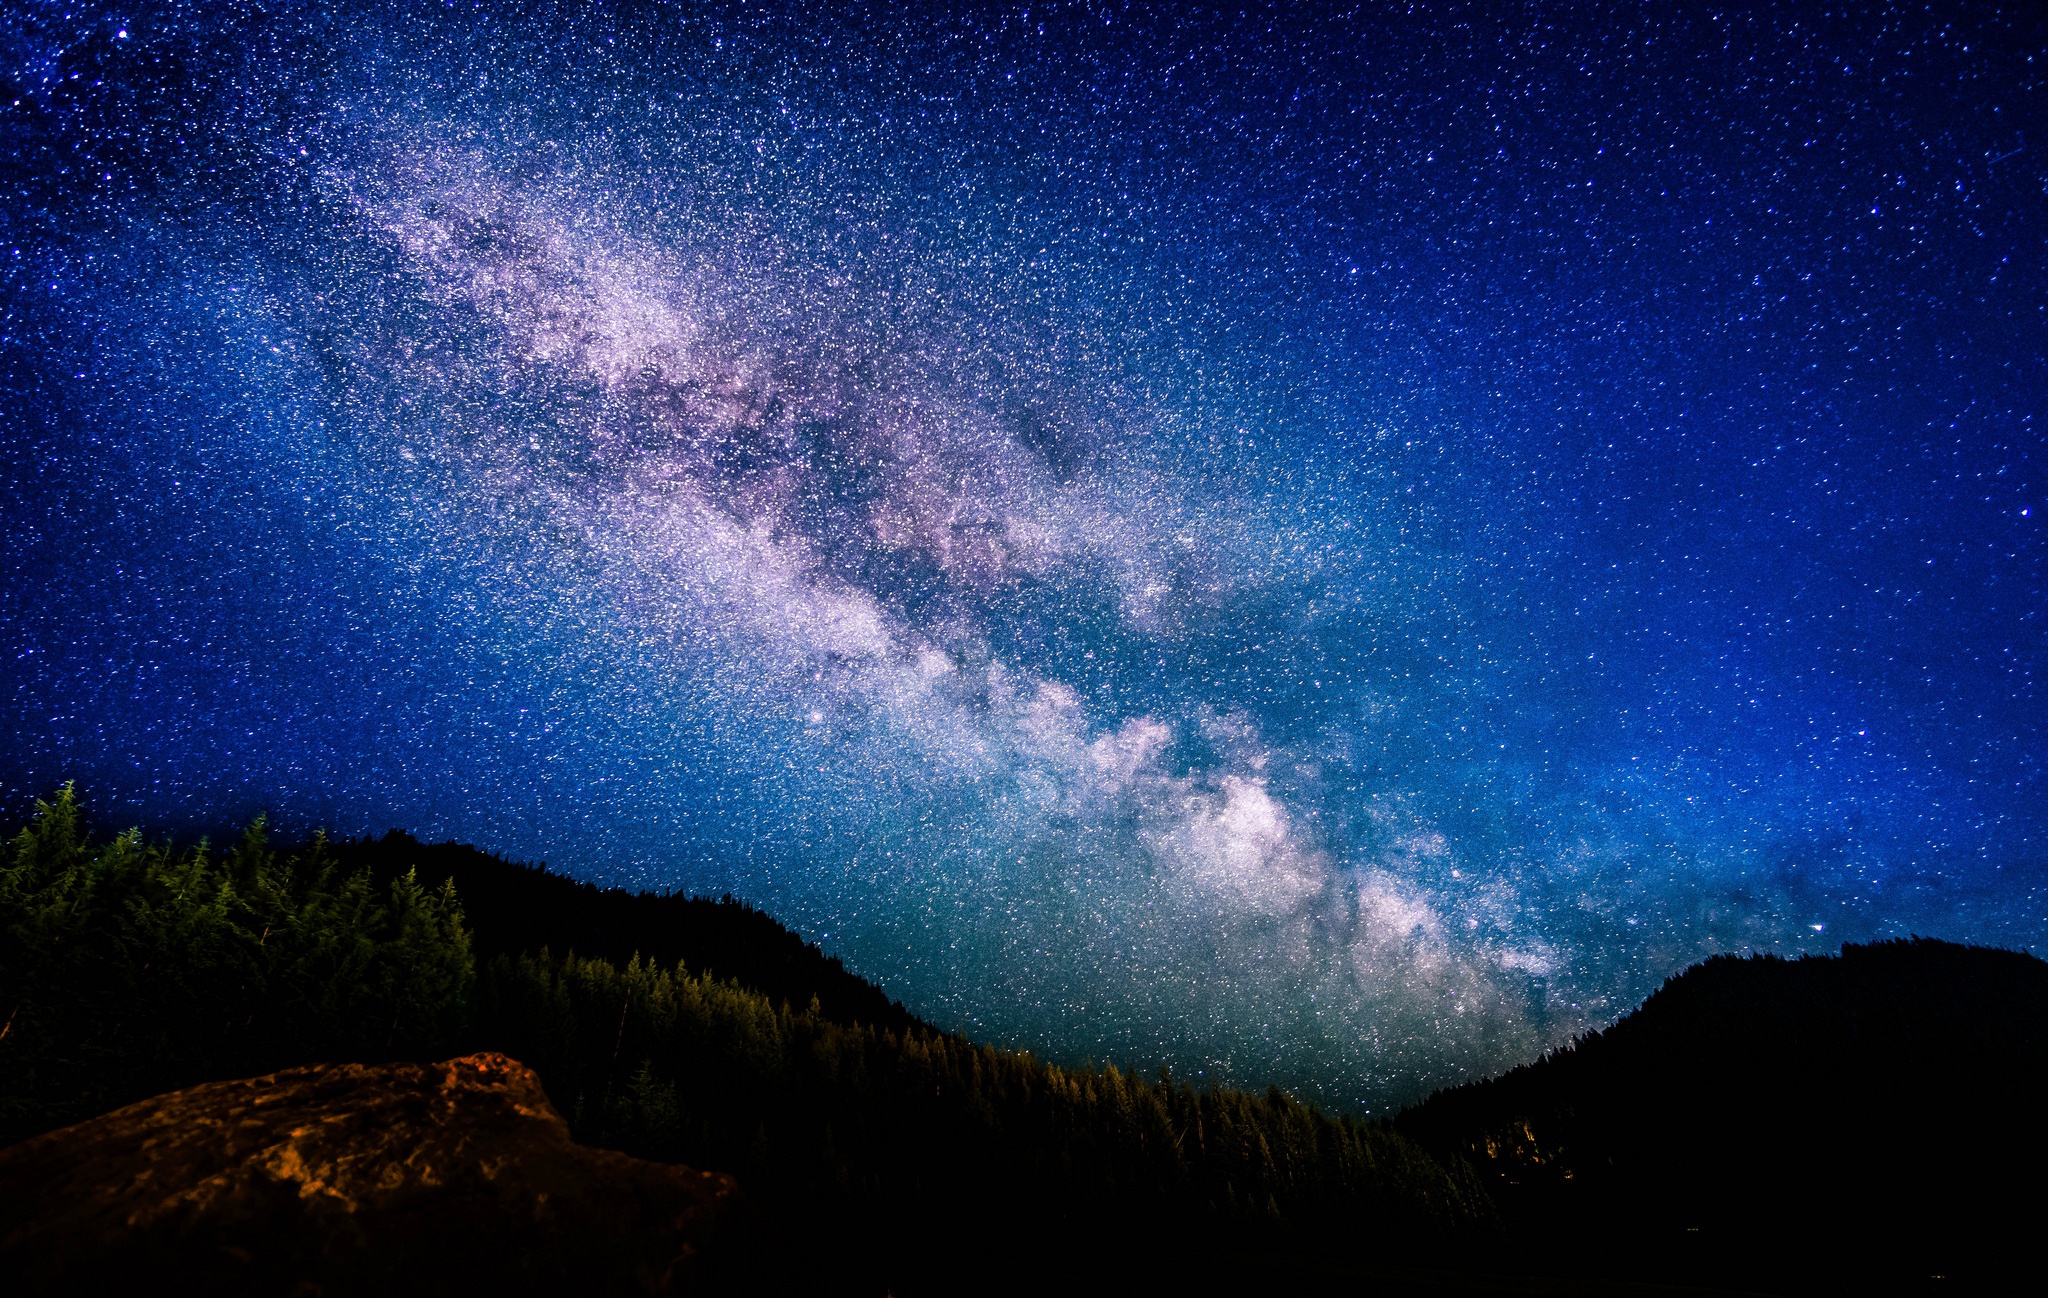 Скачать обои бесплатно Природа, Небо, Звезды, Ночь, Звездное Небо, Млечный Путь, Земля/природа картинка на рабочий стол ПК